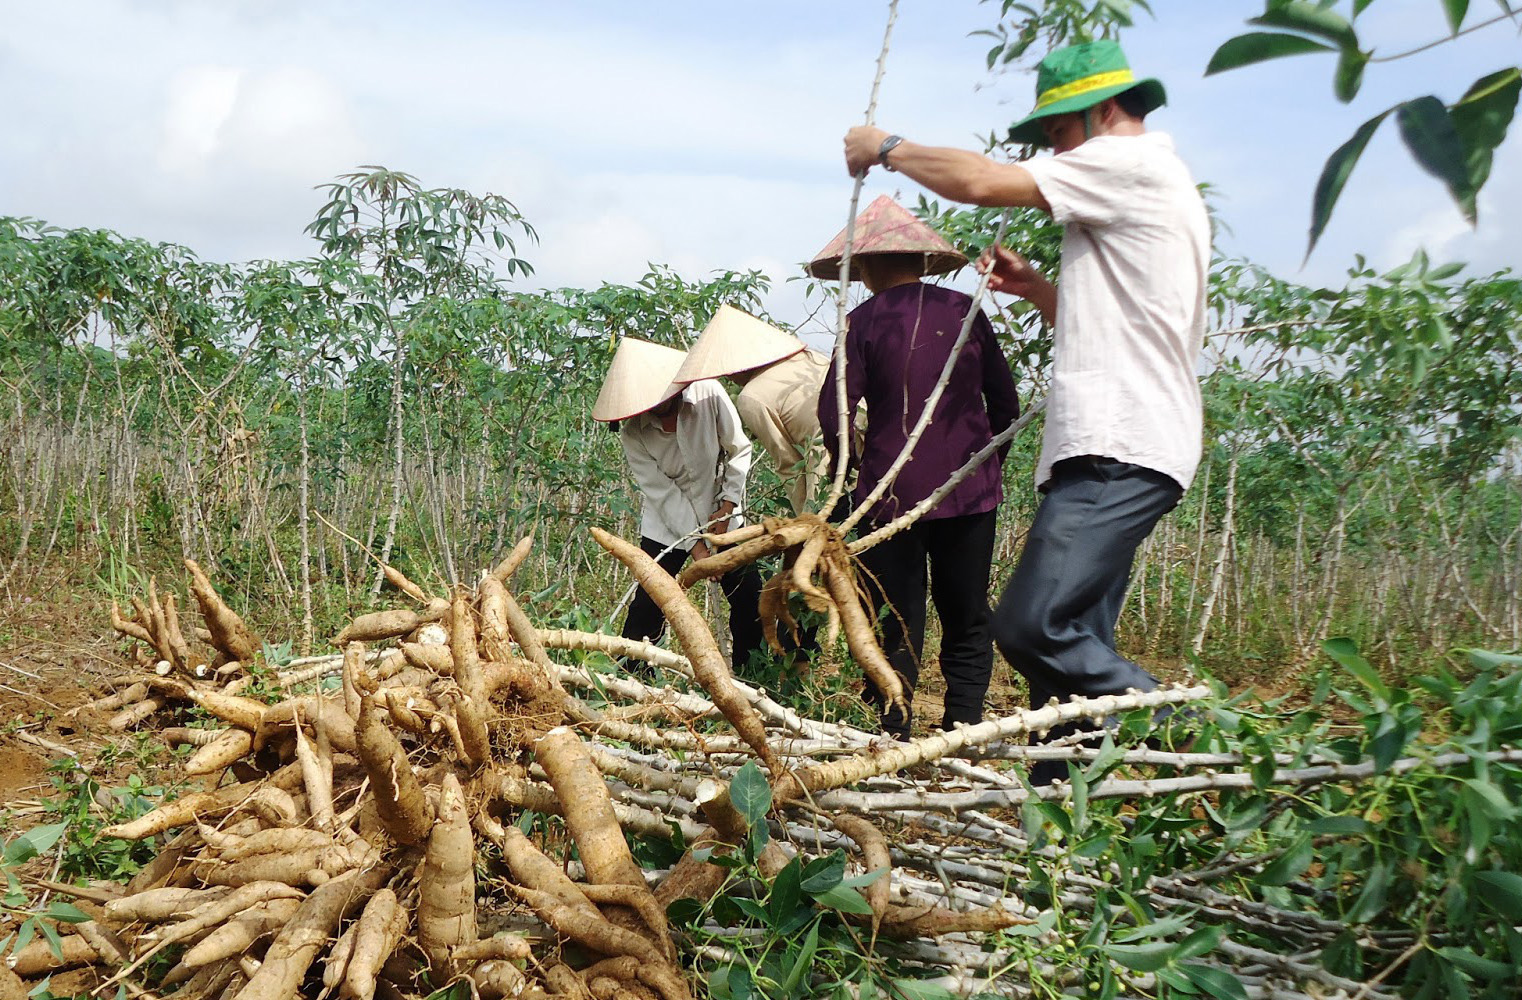 Trung Quốc đẩy mạnh mua sắn của Việt Nam làm thức ăn chăn nuôi - Ảnh 3.